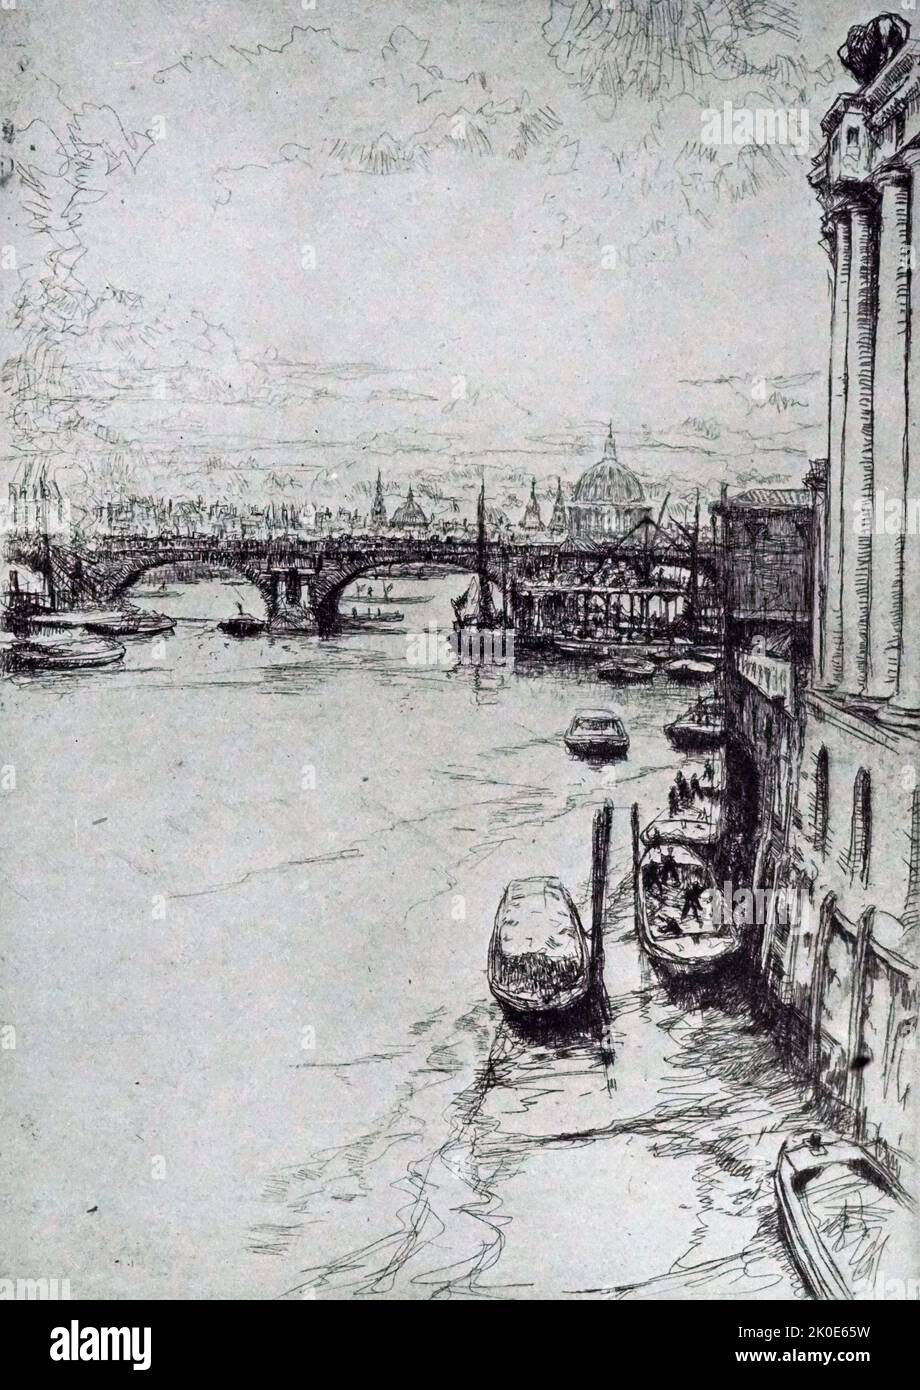 Die Löwenbrauerei, Blick von der Charing Cross Bridge. Radierung von James McBey (23. Dezember 1883 - 1. Dezember 1959), einem weitgehend autodidaktischen Künstler und Radierer, dessen Drucke während der späteren Phasen der Radierung im frühen 20.. Jahrhundert hoch geschätzt wurden. Stockfoto